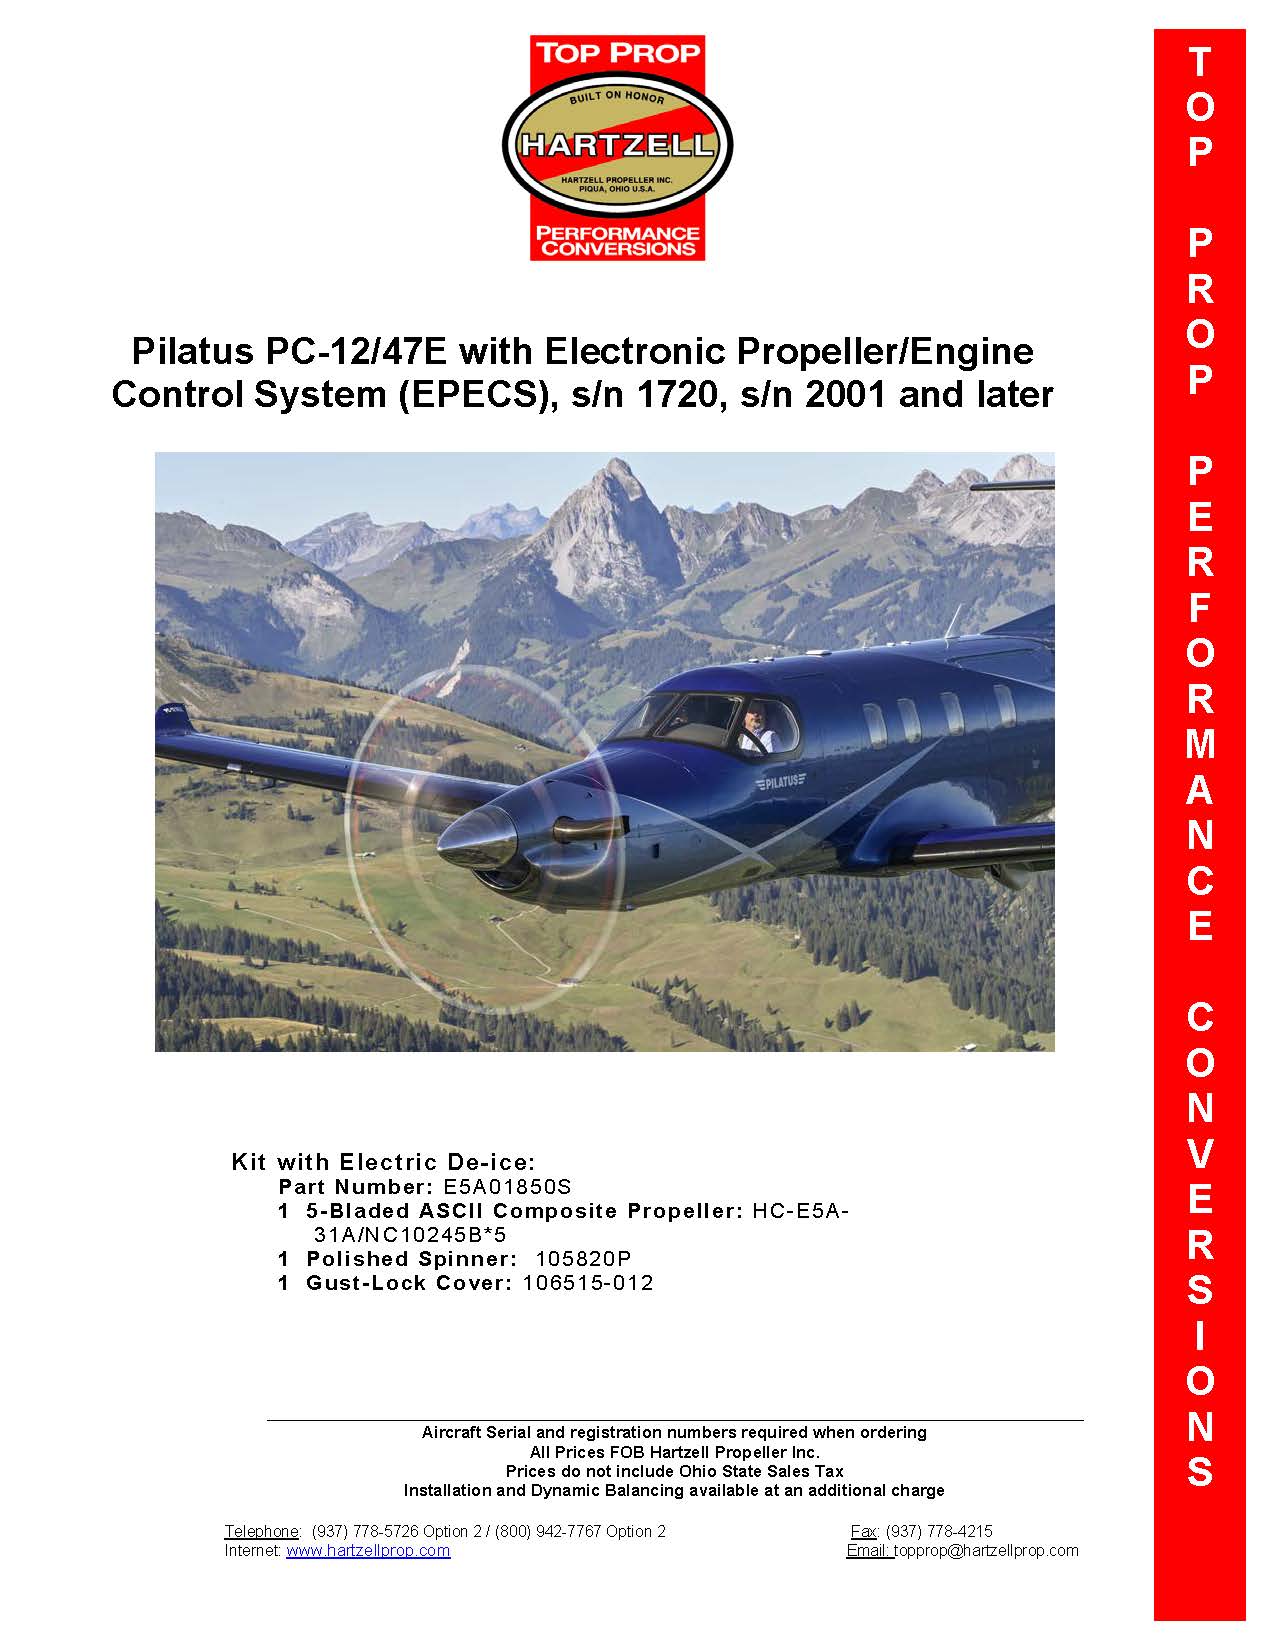 E5A01850S-HARTZELL-PROPELLER-PILATUS-PC-12-47E-5-BLADE-COMPOSITE-TOP-PROP-PICTURE-1